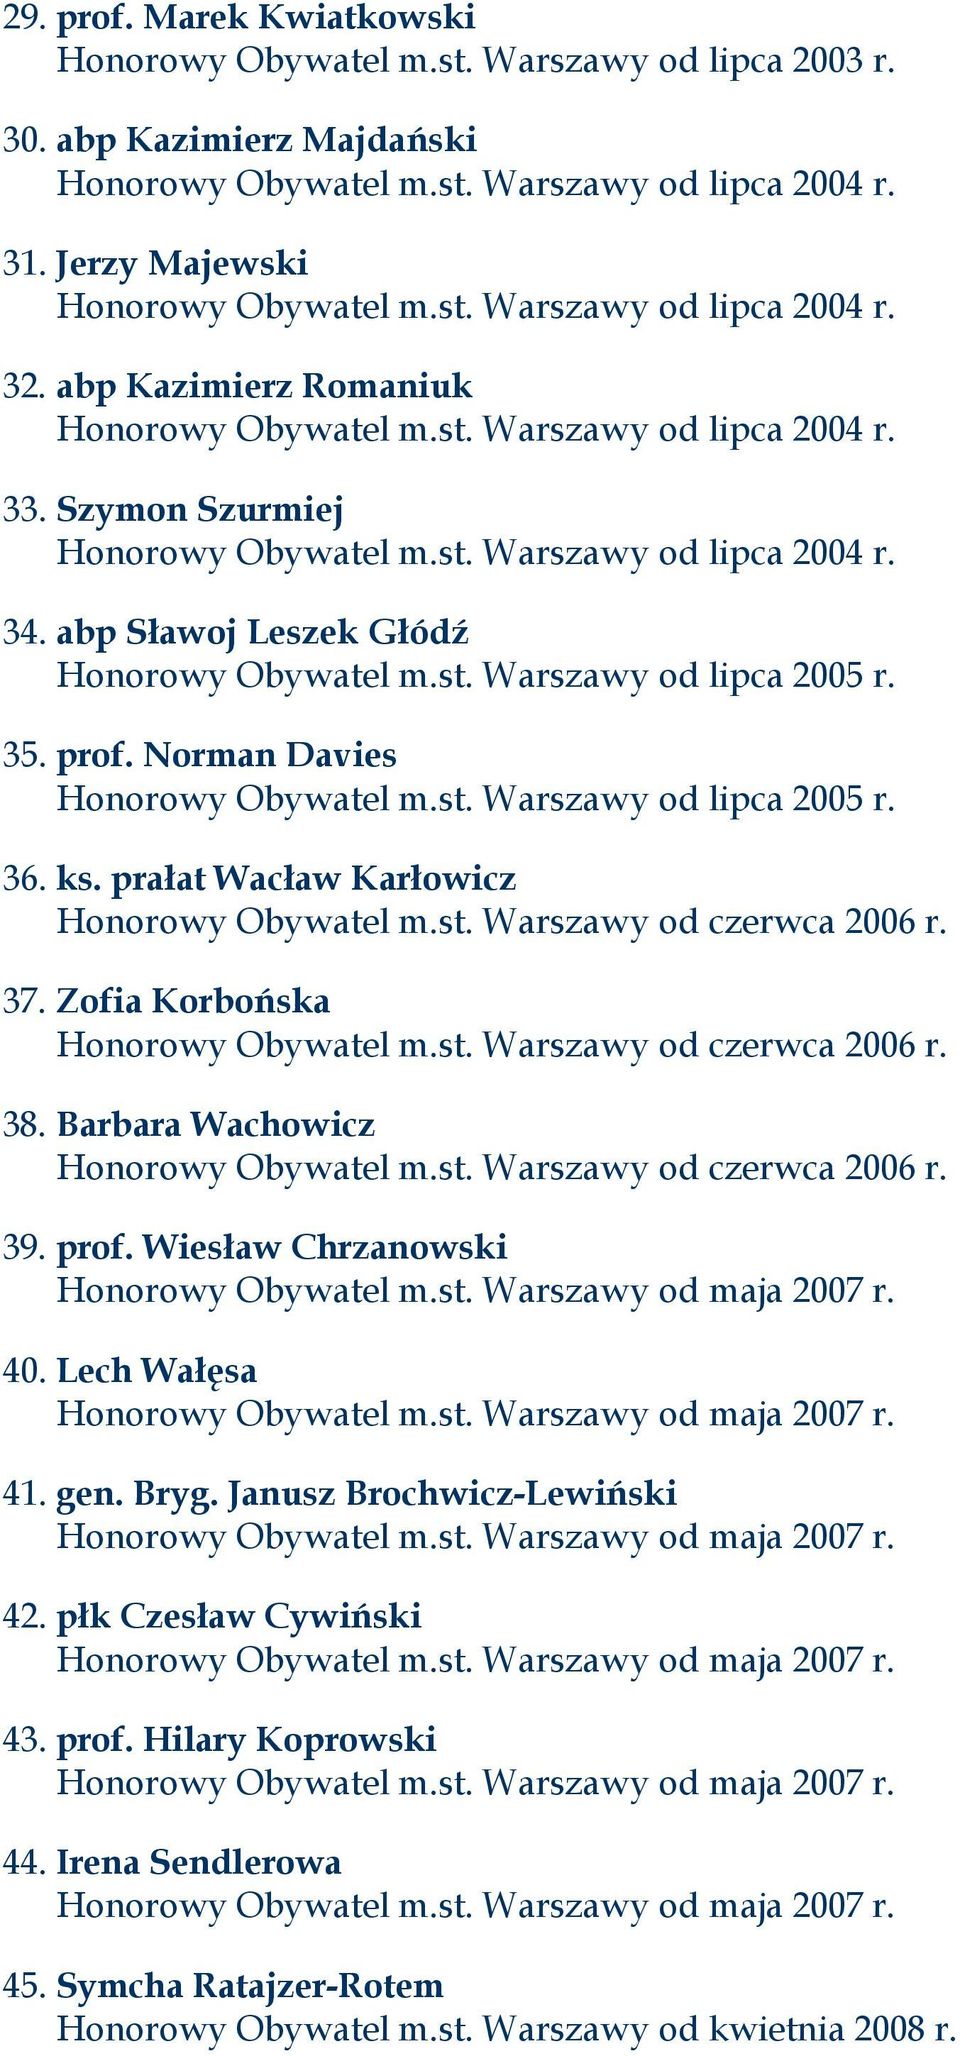 35. prof. Norman Davies Honorowy Obywatel m.st. Warszawy od lipca 2005 r. 36. ks. prałat Wacław Karłowicz Honorowy Obywatel m.st. Warszawy od czerwca 2006 r. 37. Zofia Korbońska Honorowy Obywatel m.